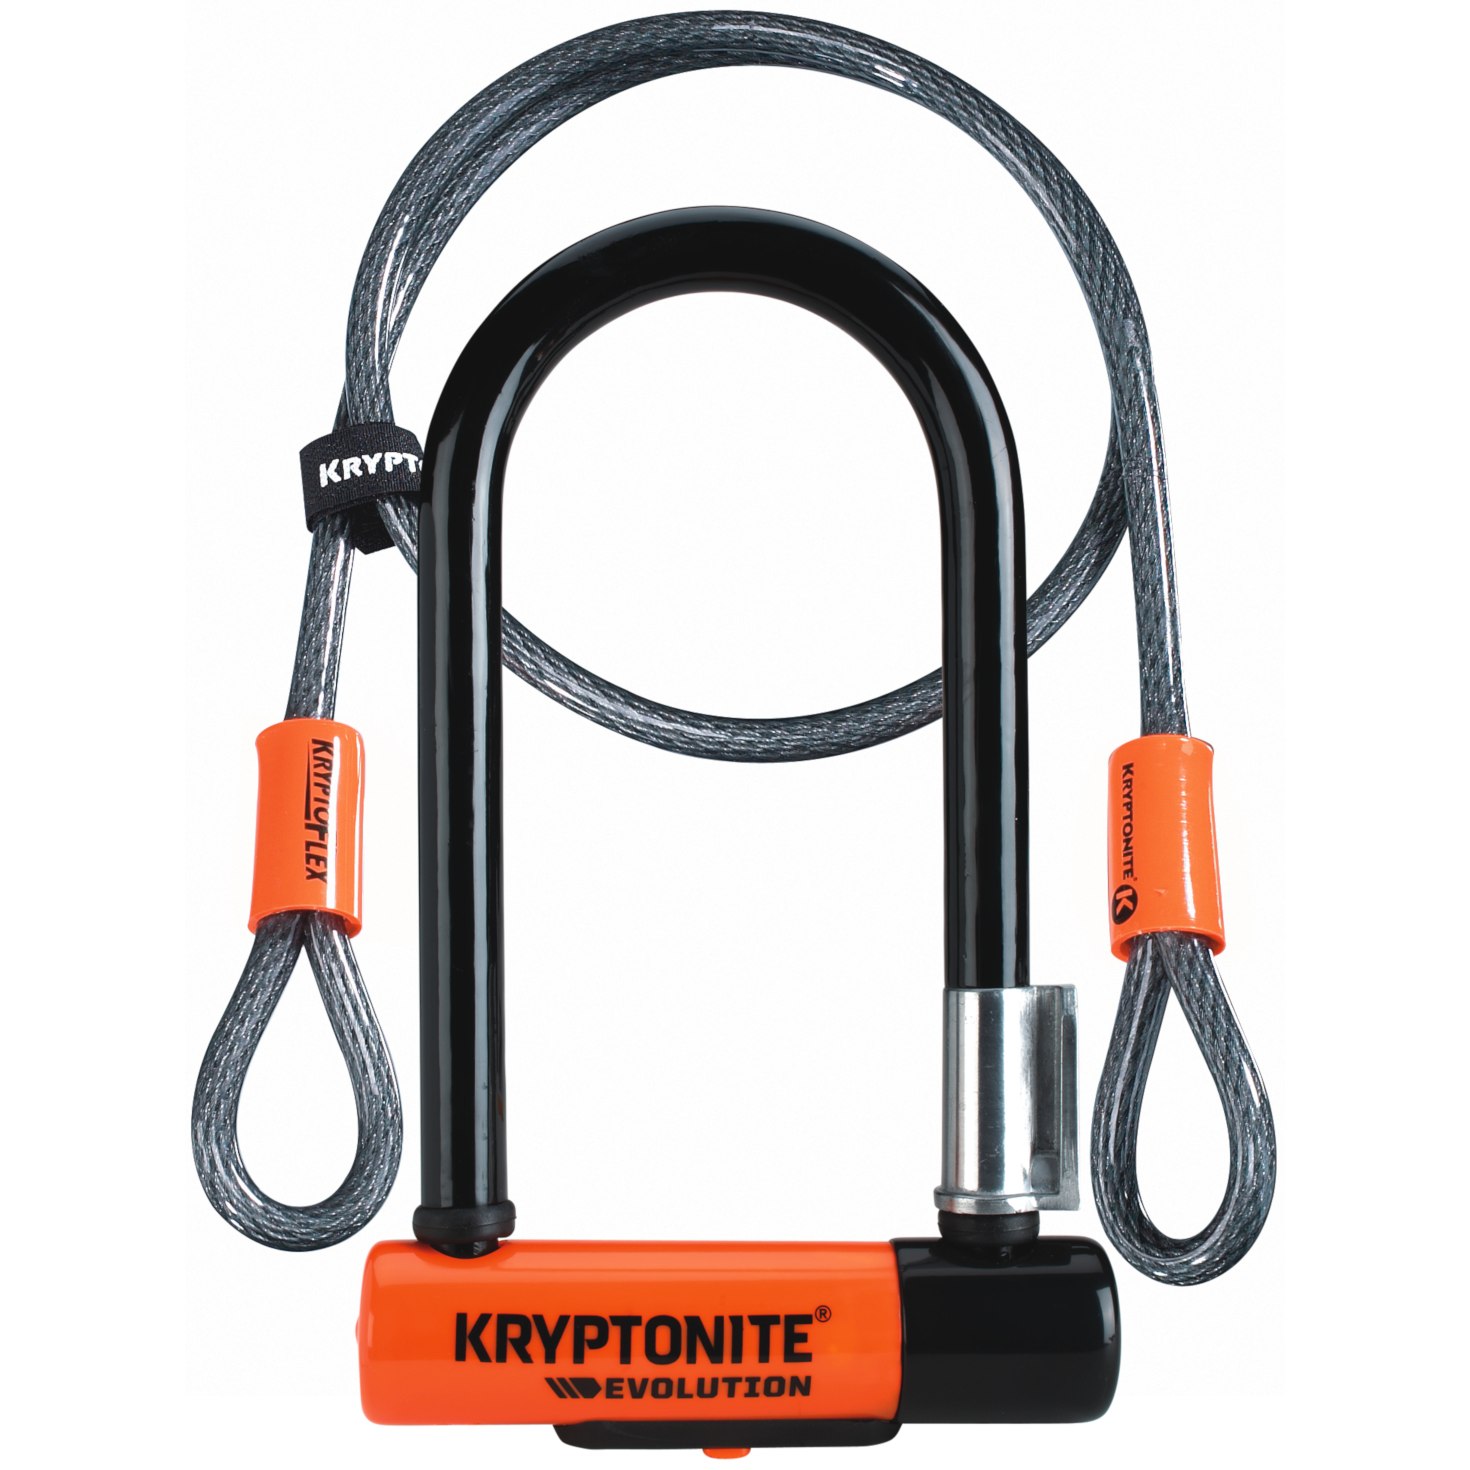 Produktbild von Kryptonite Evolution Mini-7 Bügelschloss + 120cm Kryptoflex-Kabel